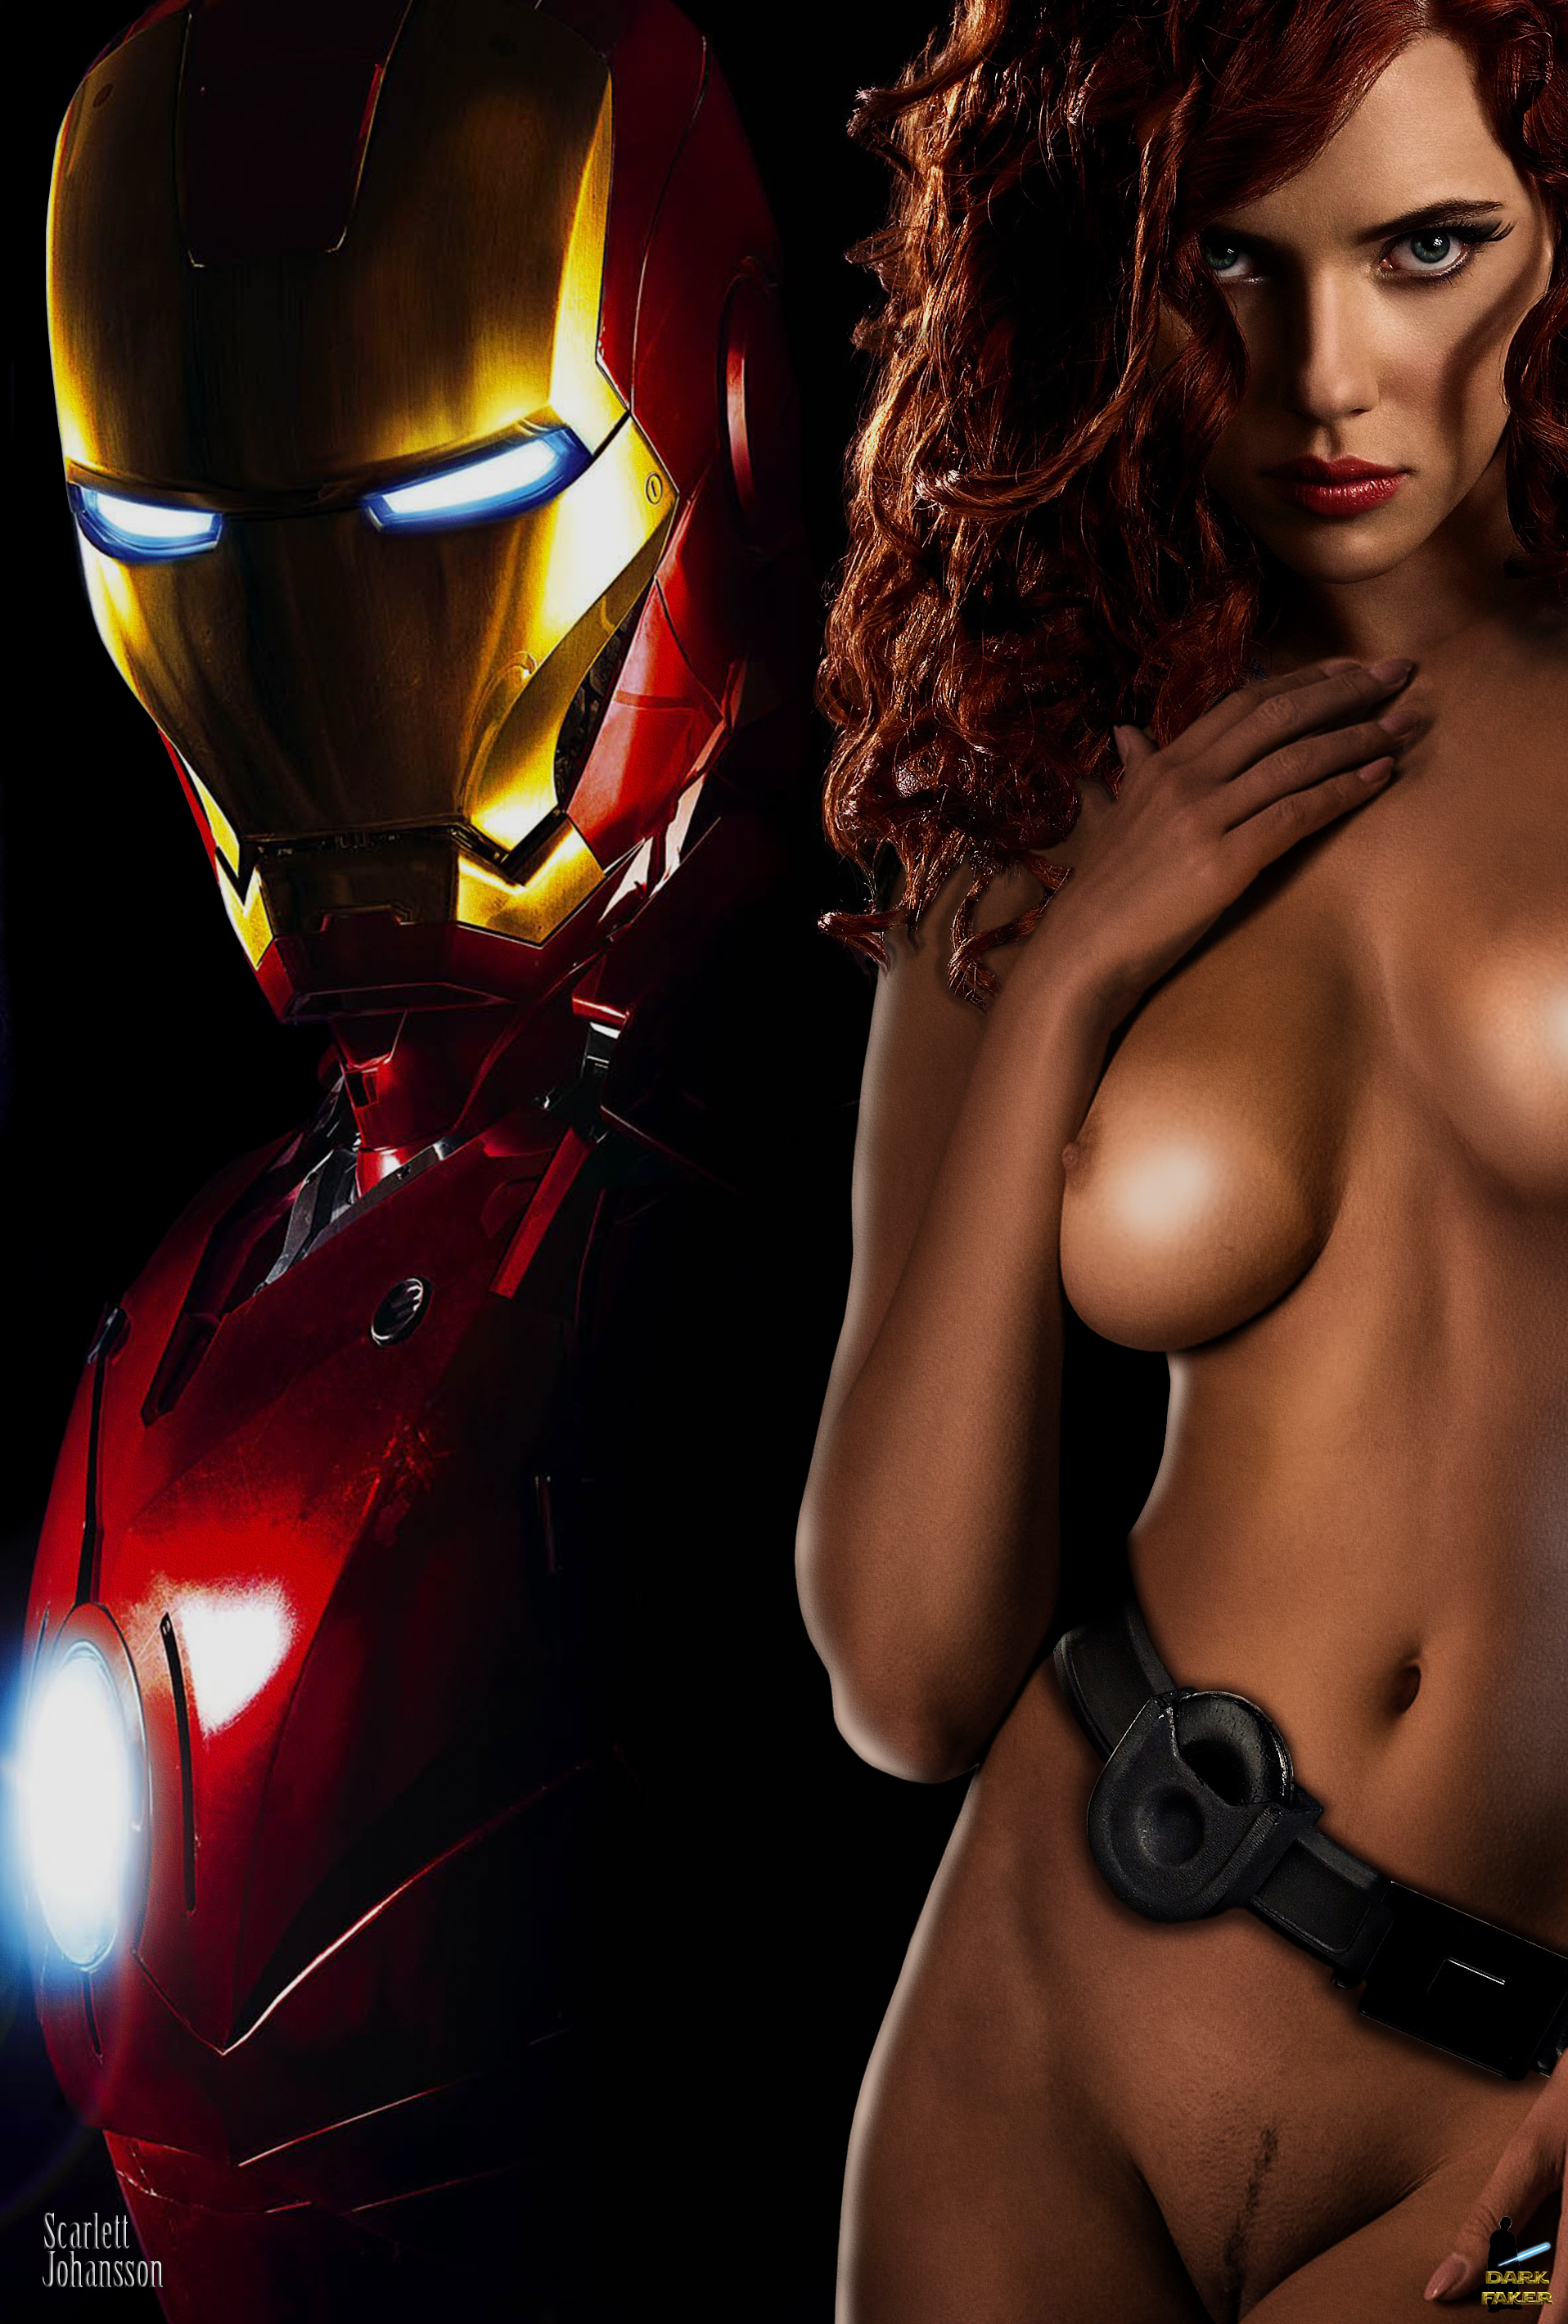 Scarlett Johansson Avengers Porn Rule 34 - Black Widow: The Sexiest Avenger â€“ Rule 34 Gallery â€“ Nerd Porn!